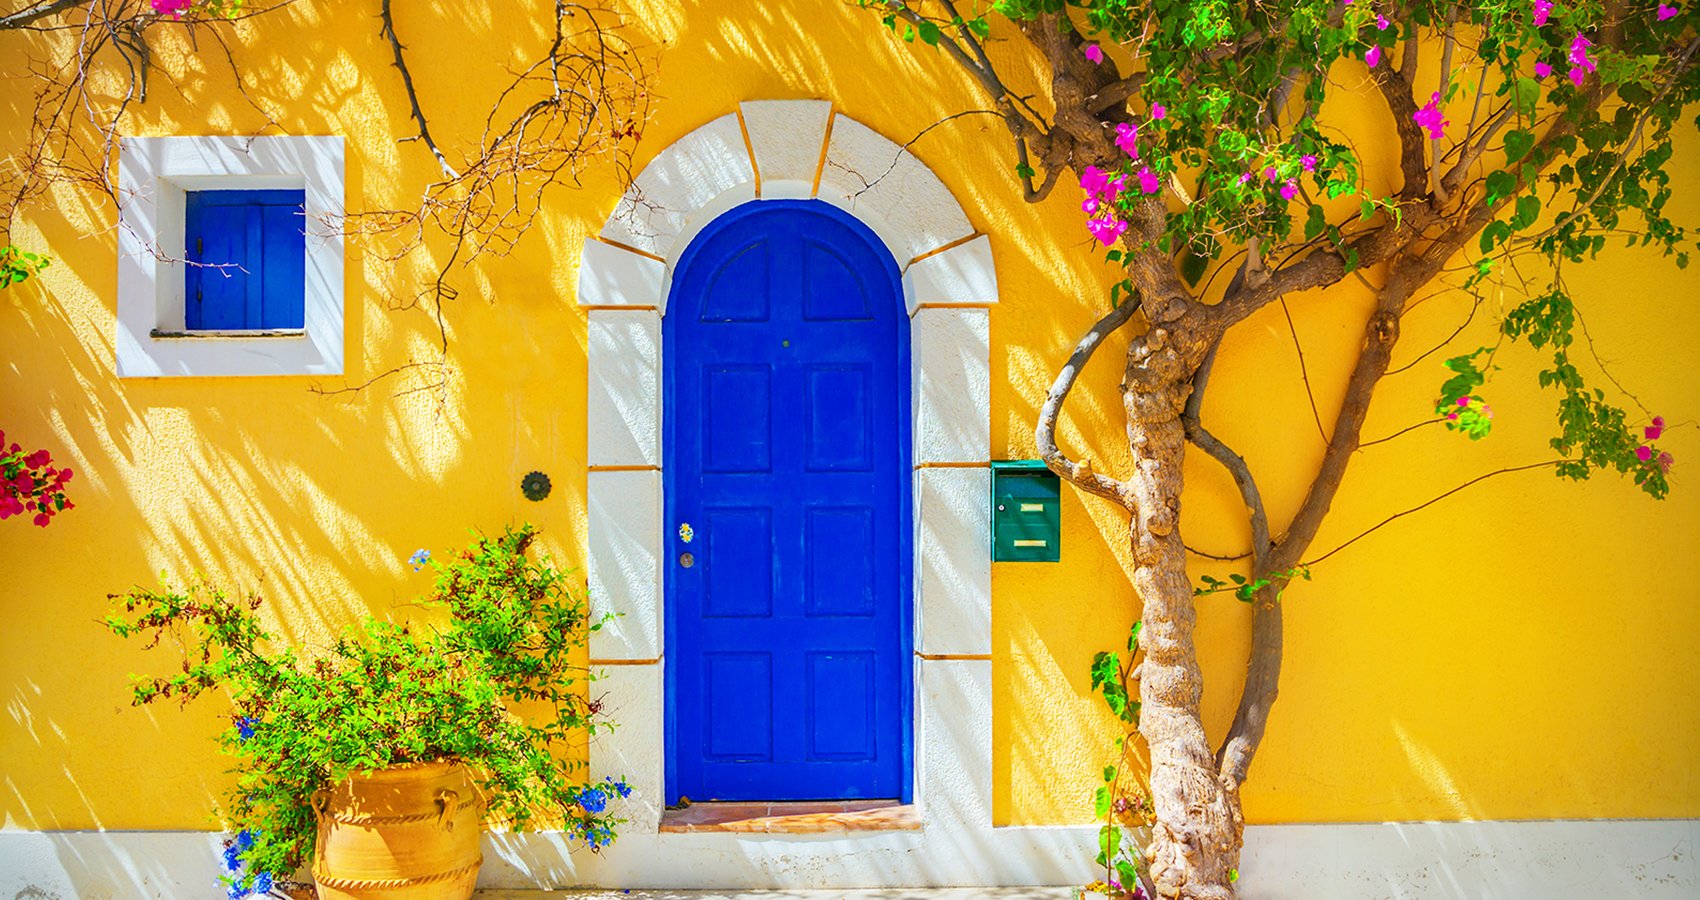 Greek house with blue door